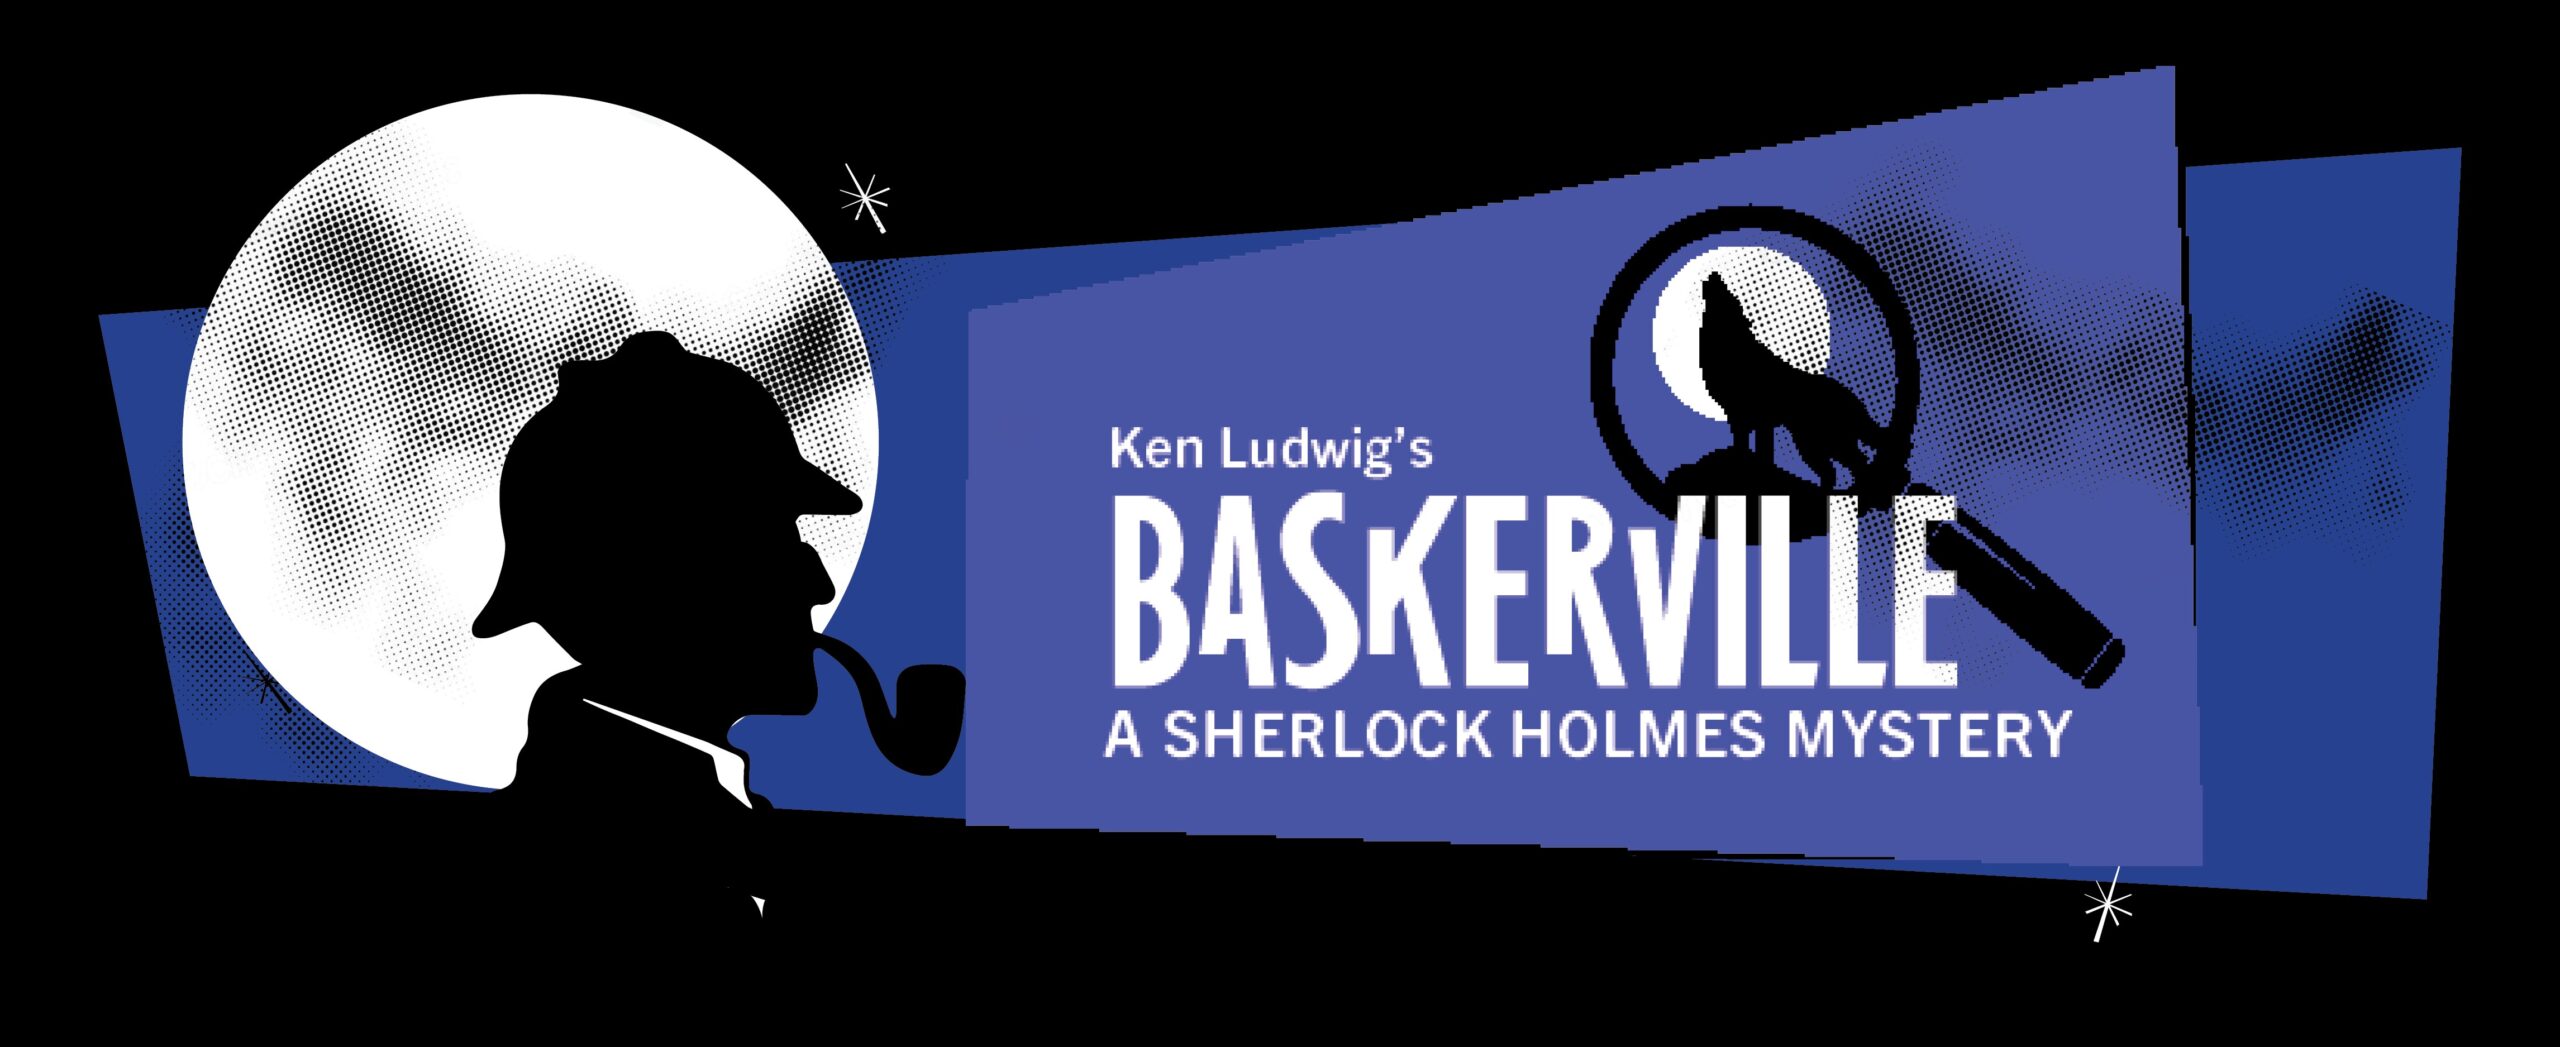 Baskerville Header Image